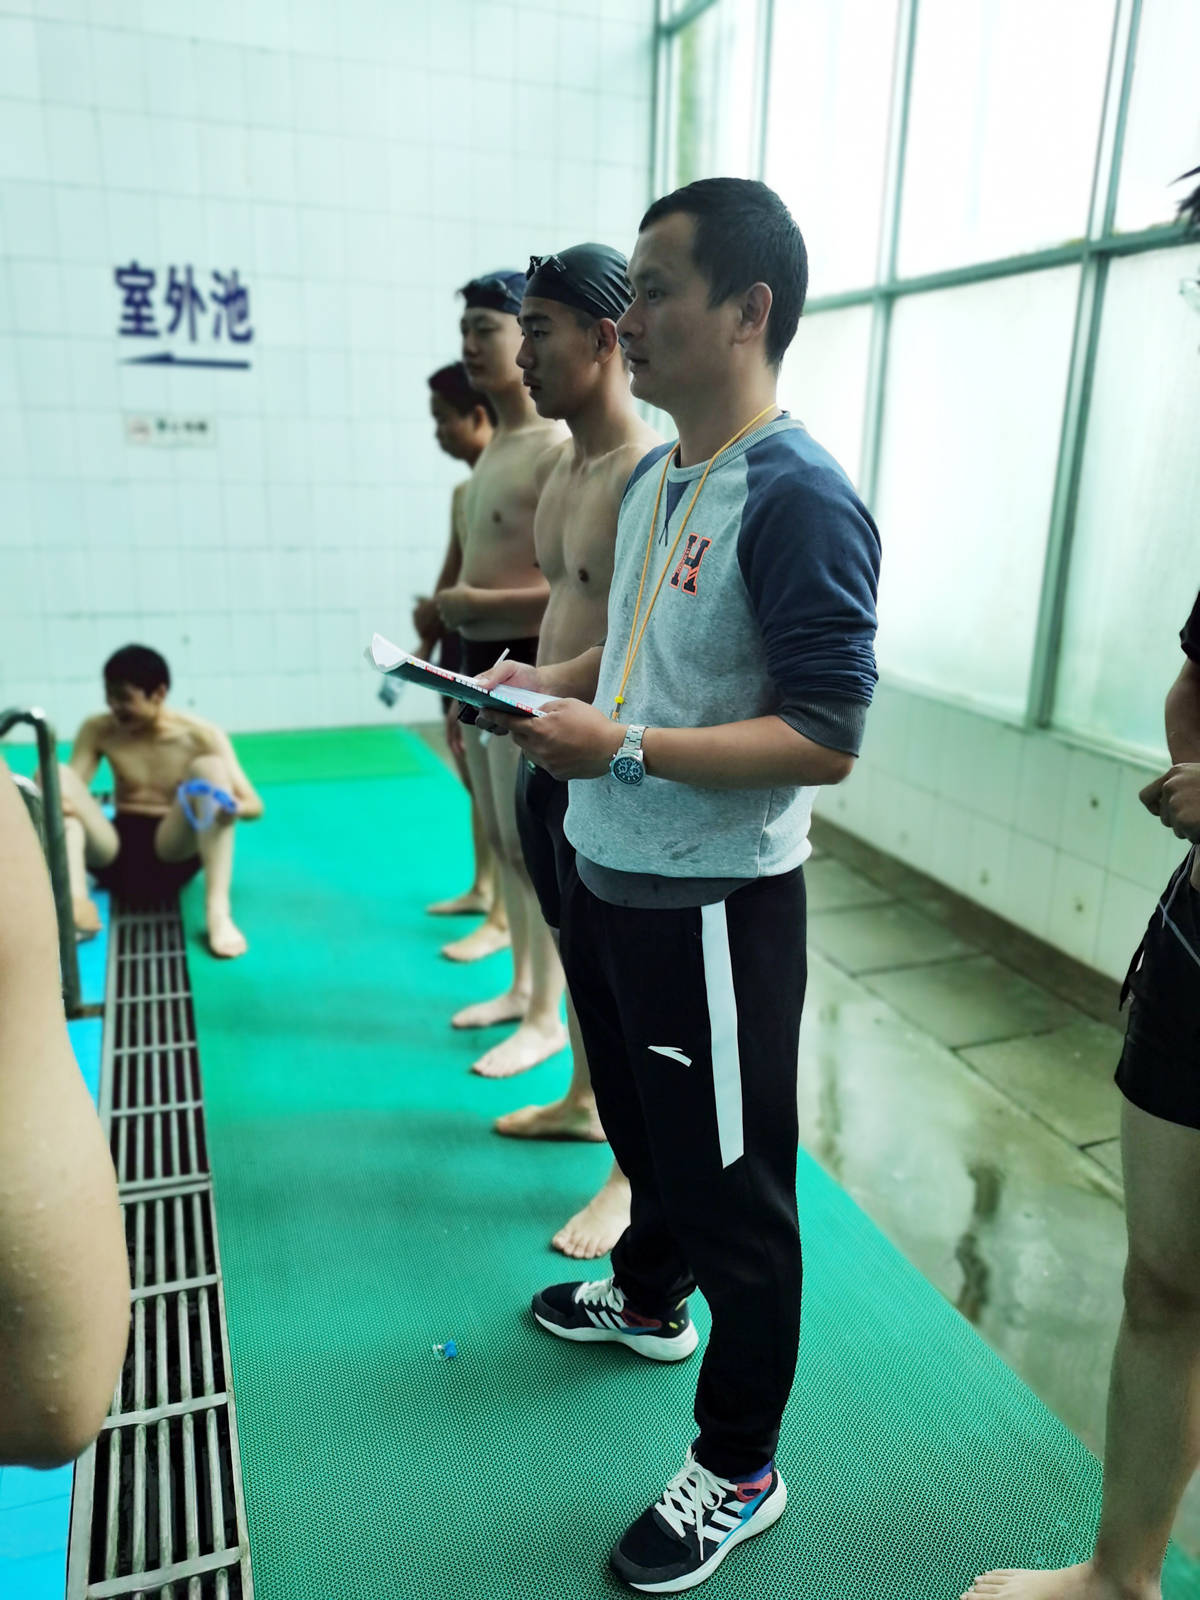 江苏省海安高级中学新一轮特色游泳课程正式开课